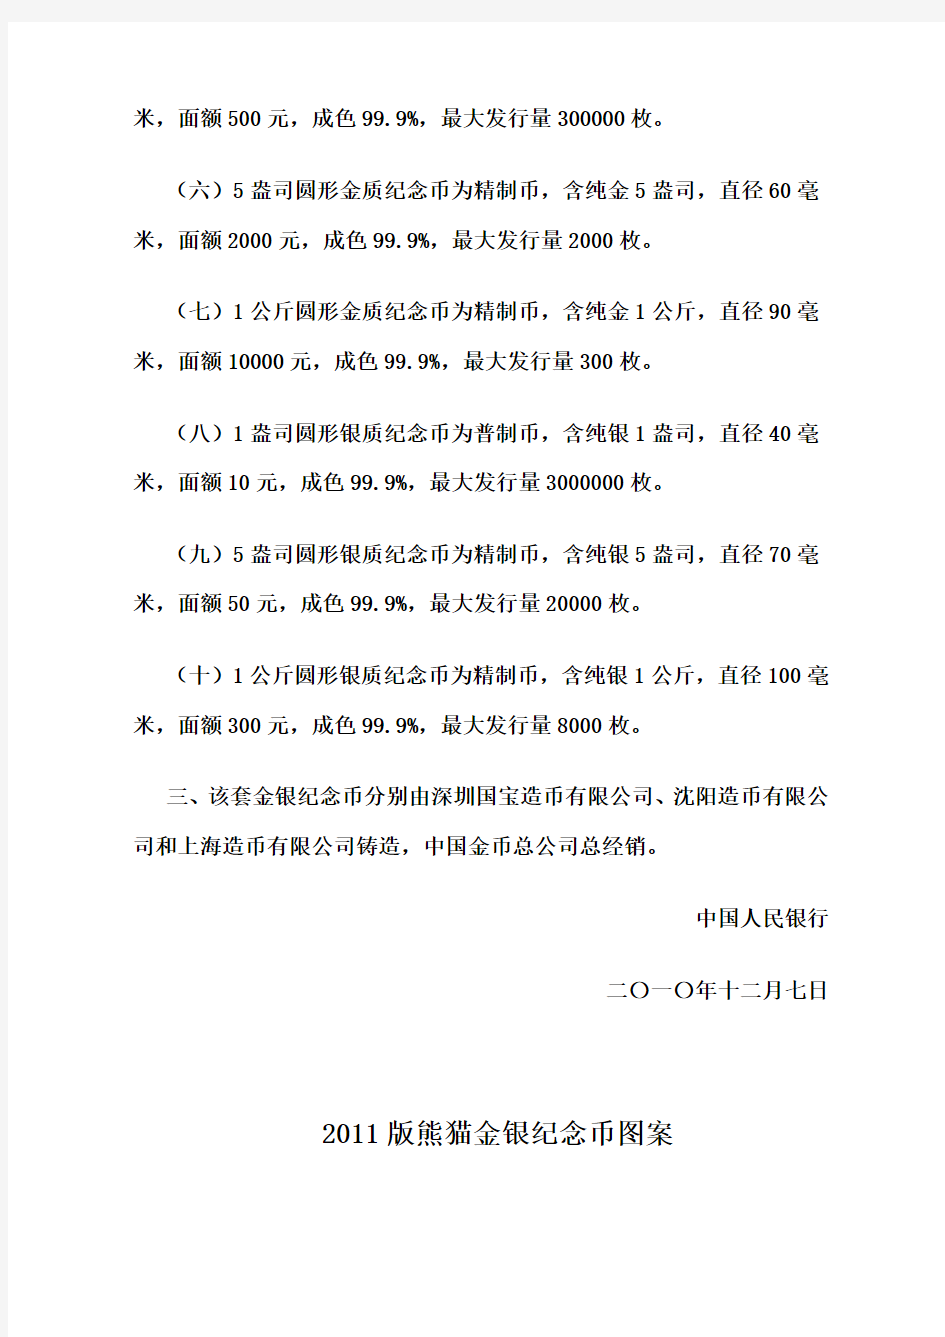 中国人民银行公告〔2010〕第18号——2011版熊猫金银纪念币发行